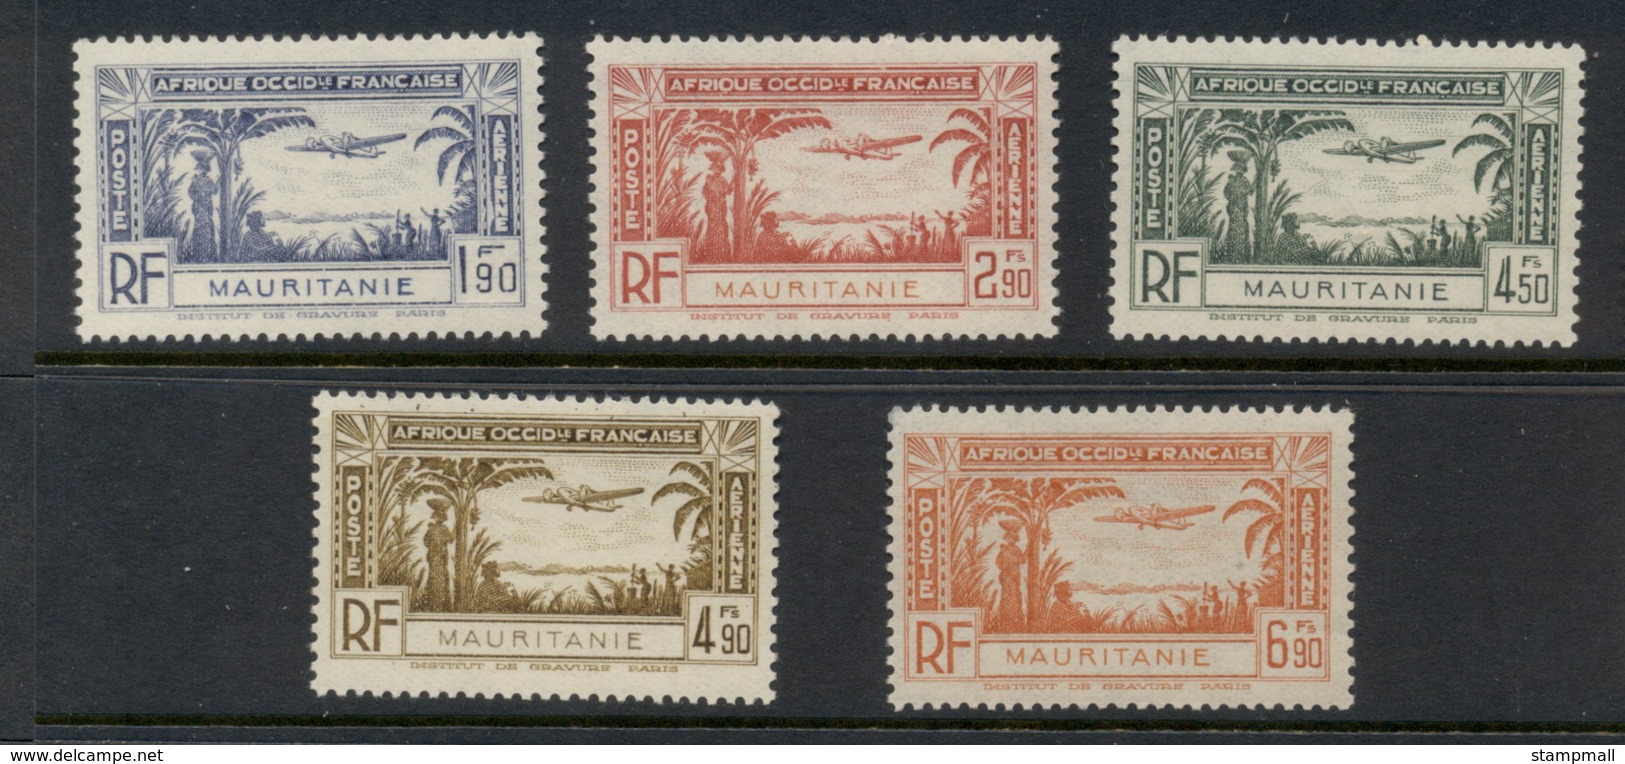 Mauritania 1940 Airmail MUH - Unused Stamps